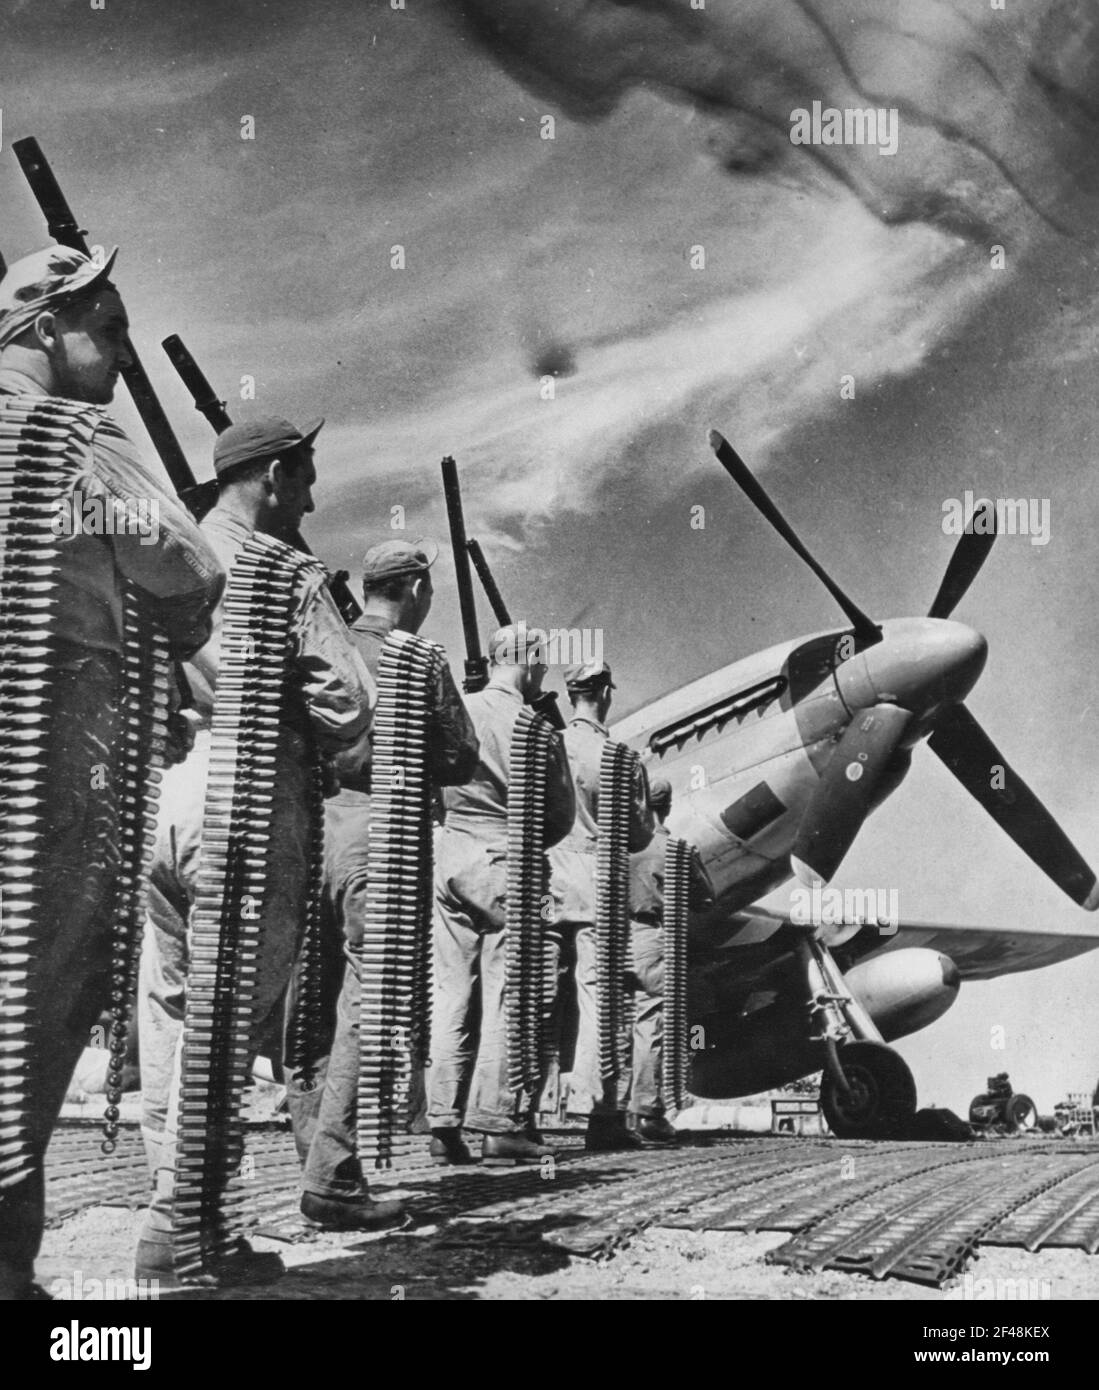 FEUERKRAFT DES P-51 MUSTANG KÄMPFERS. Dies sind die sechs .50 Kaliber Maschinengewehre in der neuen US Army 8th Air Force P-51 Mustang Kämpfer verwendet. Die Patronenbänder, die transportiert werden, stellen die Menge dar, die nur VON EINER Waffe auf einem Flug verwendet wird Stockfoto